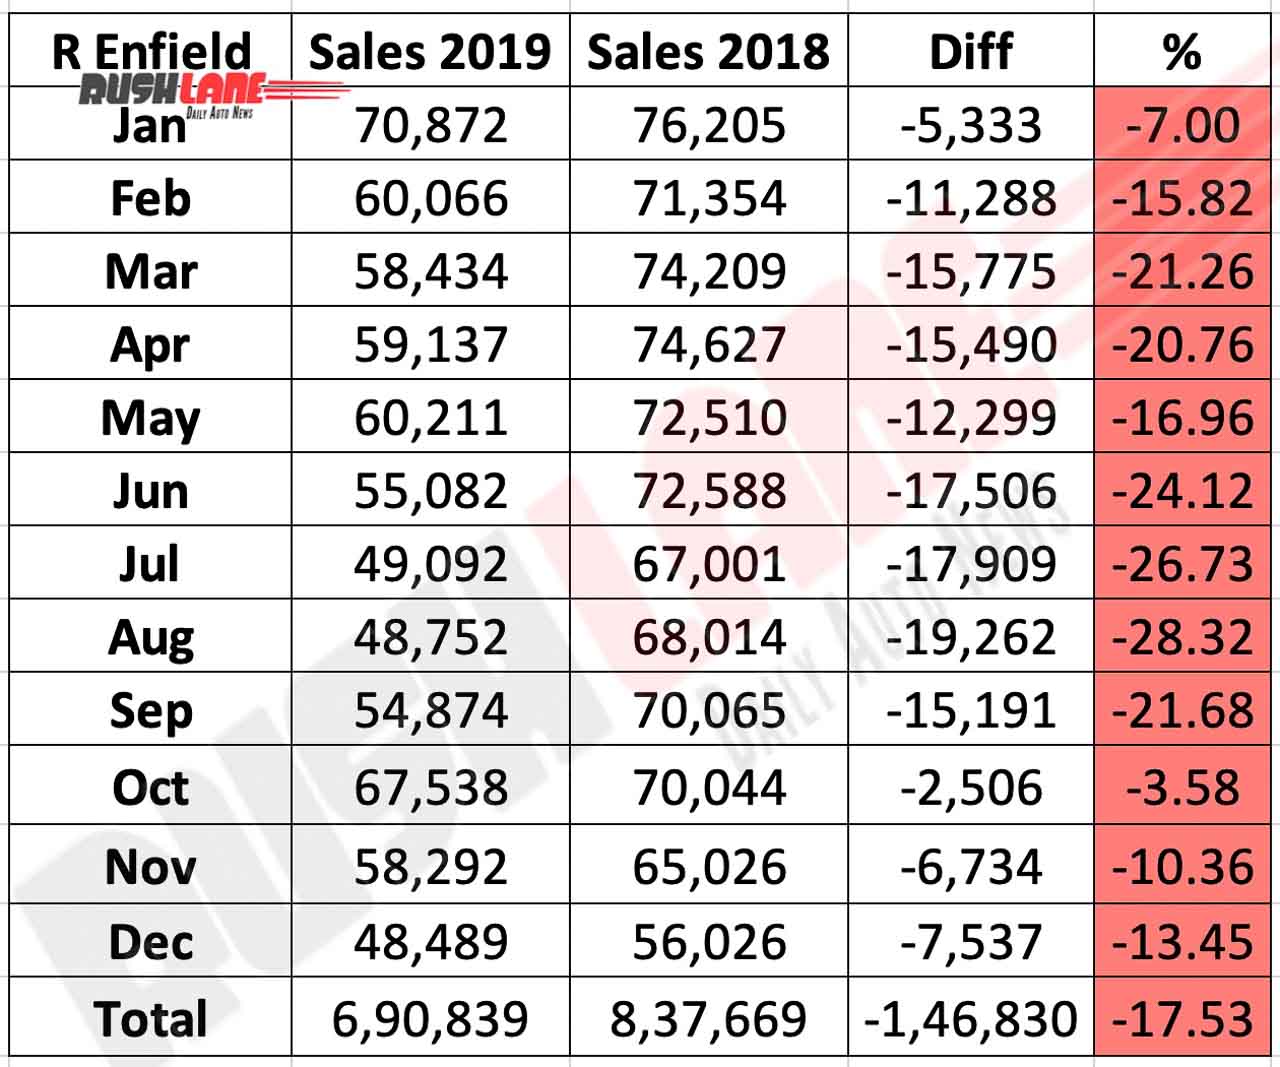 Royal Enfield sales in 2019 vs 2018